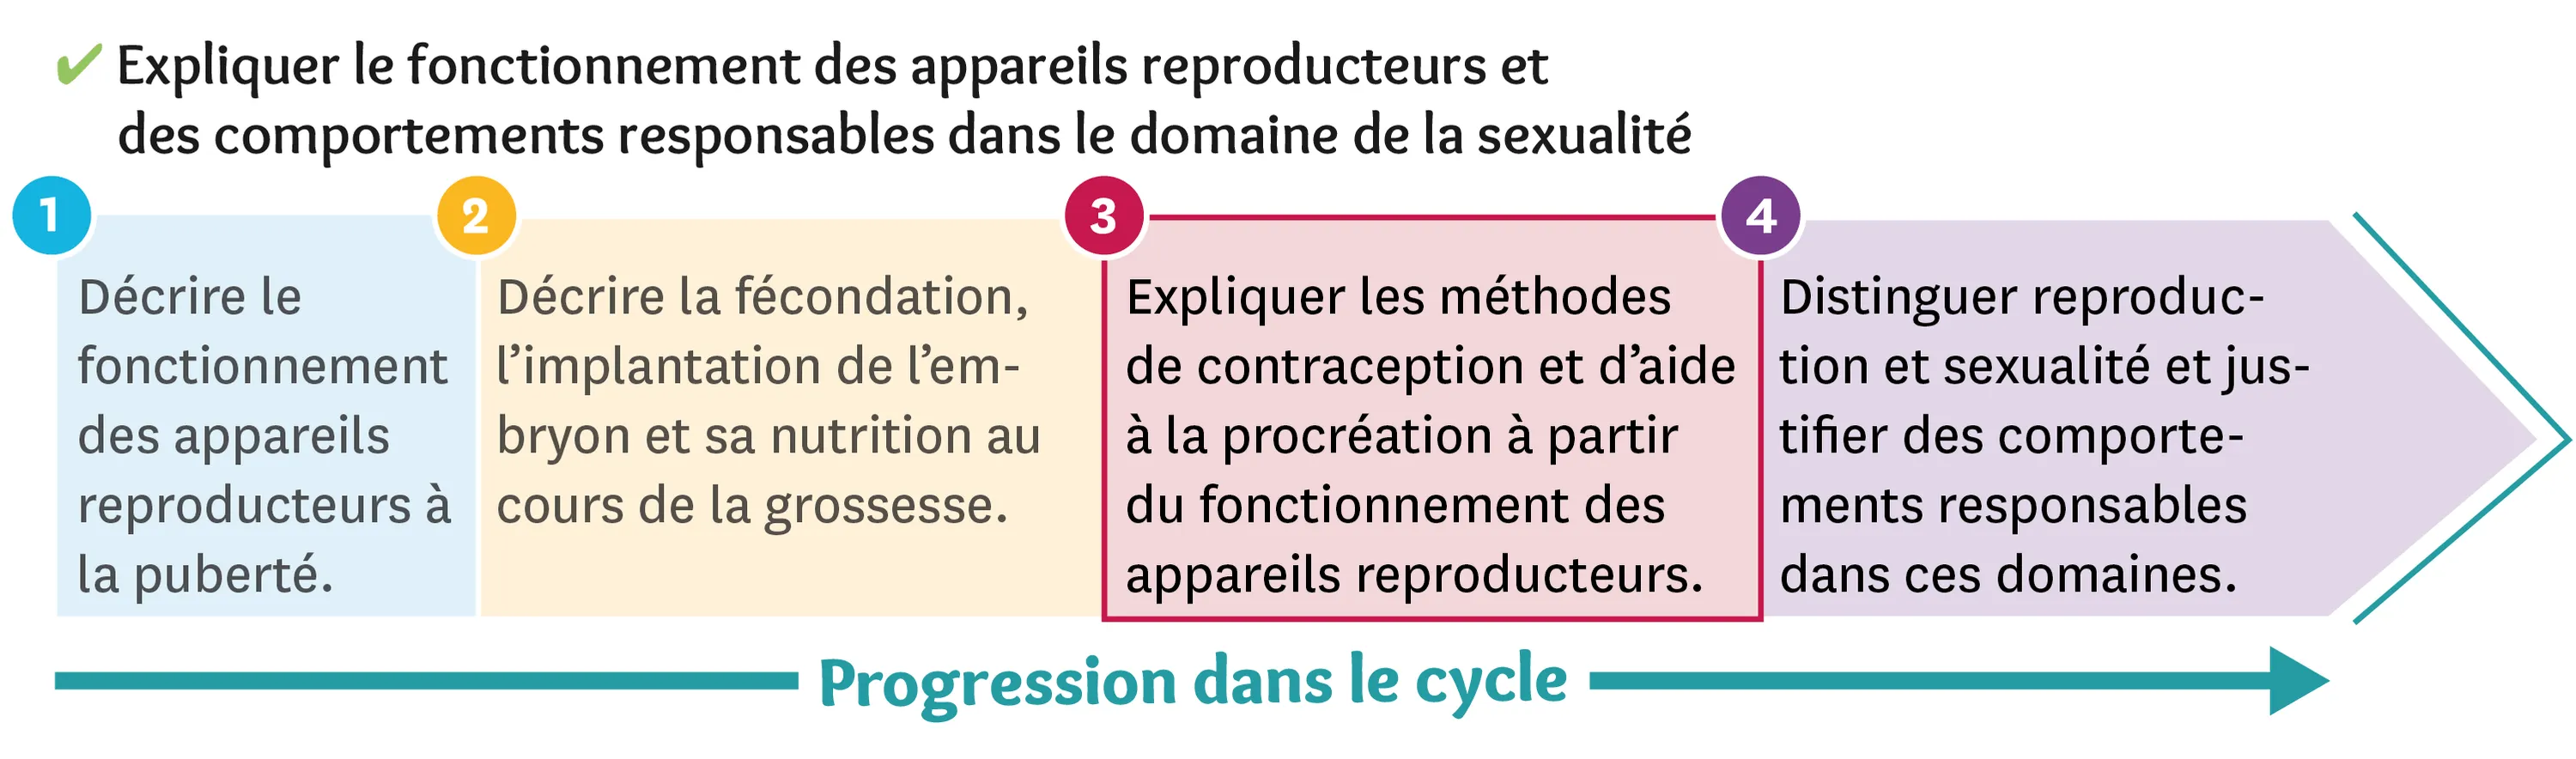 Illustration d'une progression dans le cycle du fonctionnement des appareils reproducteurs et des comportements responsables dans le domaine de la sexualité